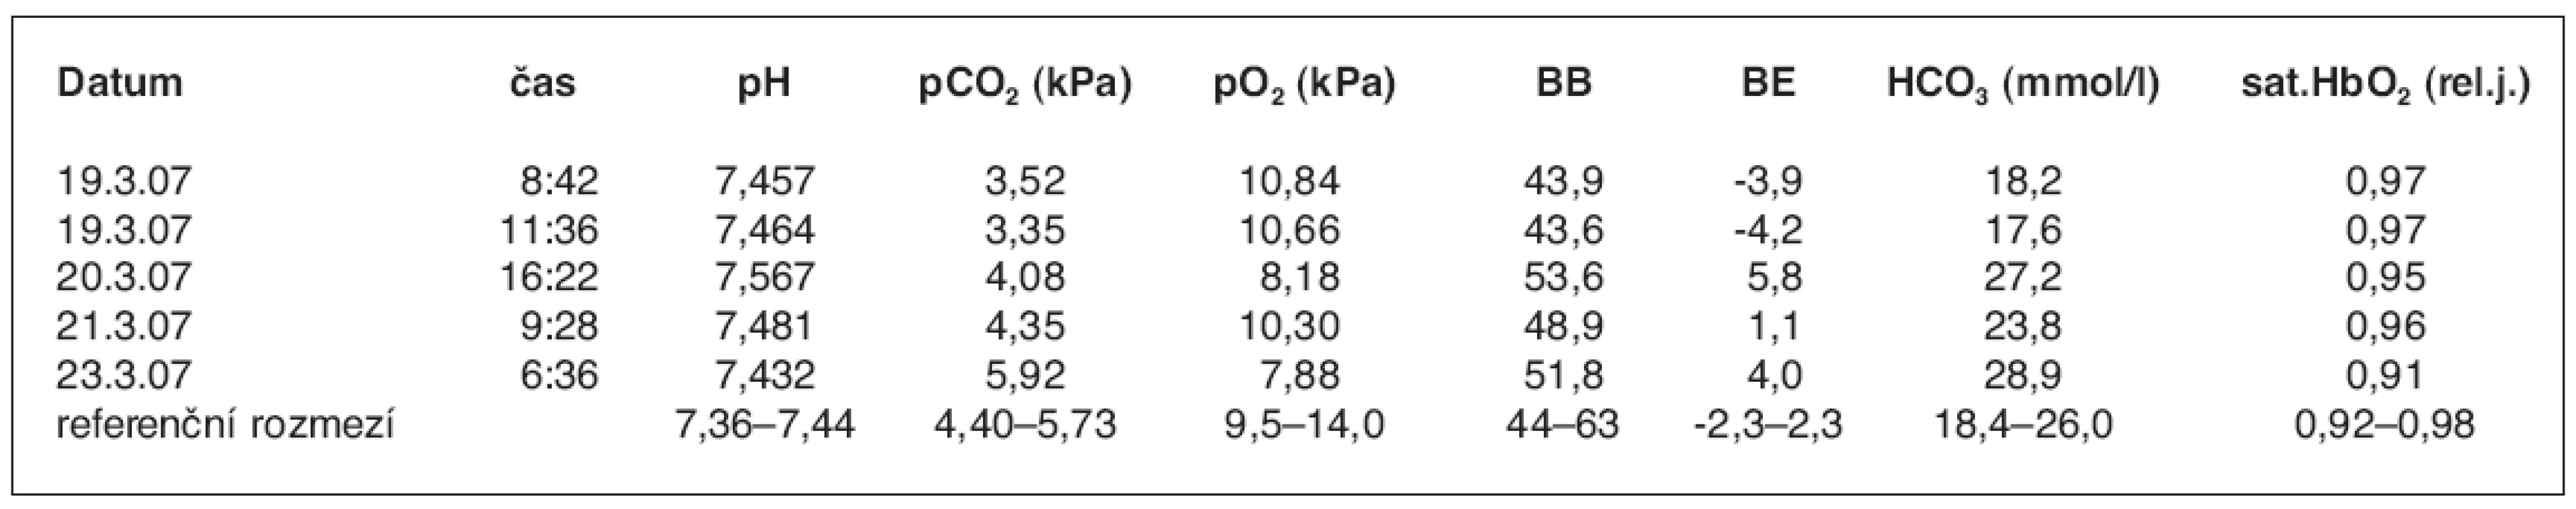 Hodnoty acidobázických parametrů v průběhu prvních 72 hodin po hospitalizaci z důvodu požití theofylinu při suicidálním pokusu